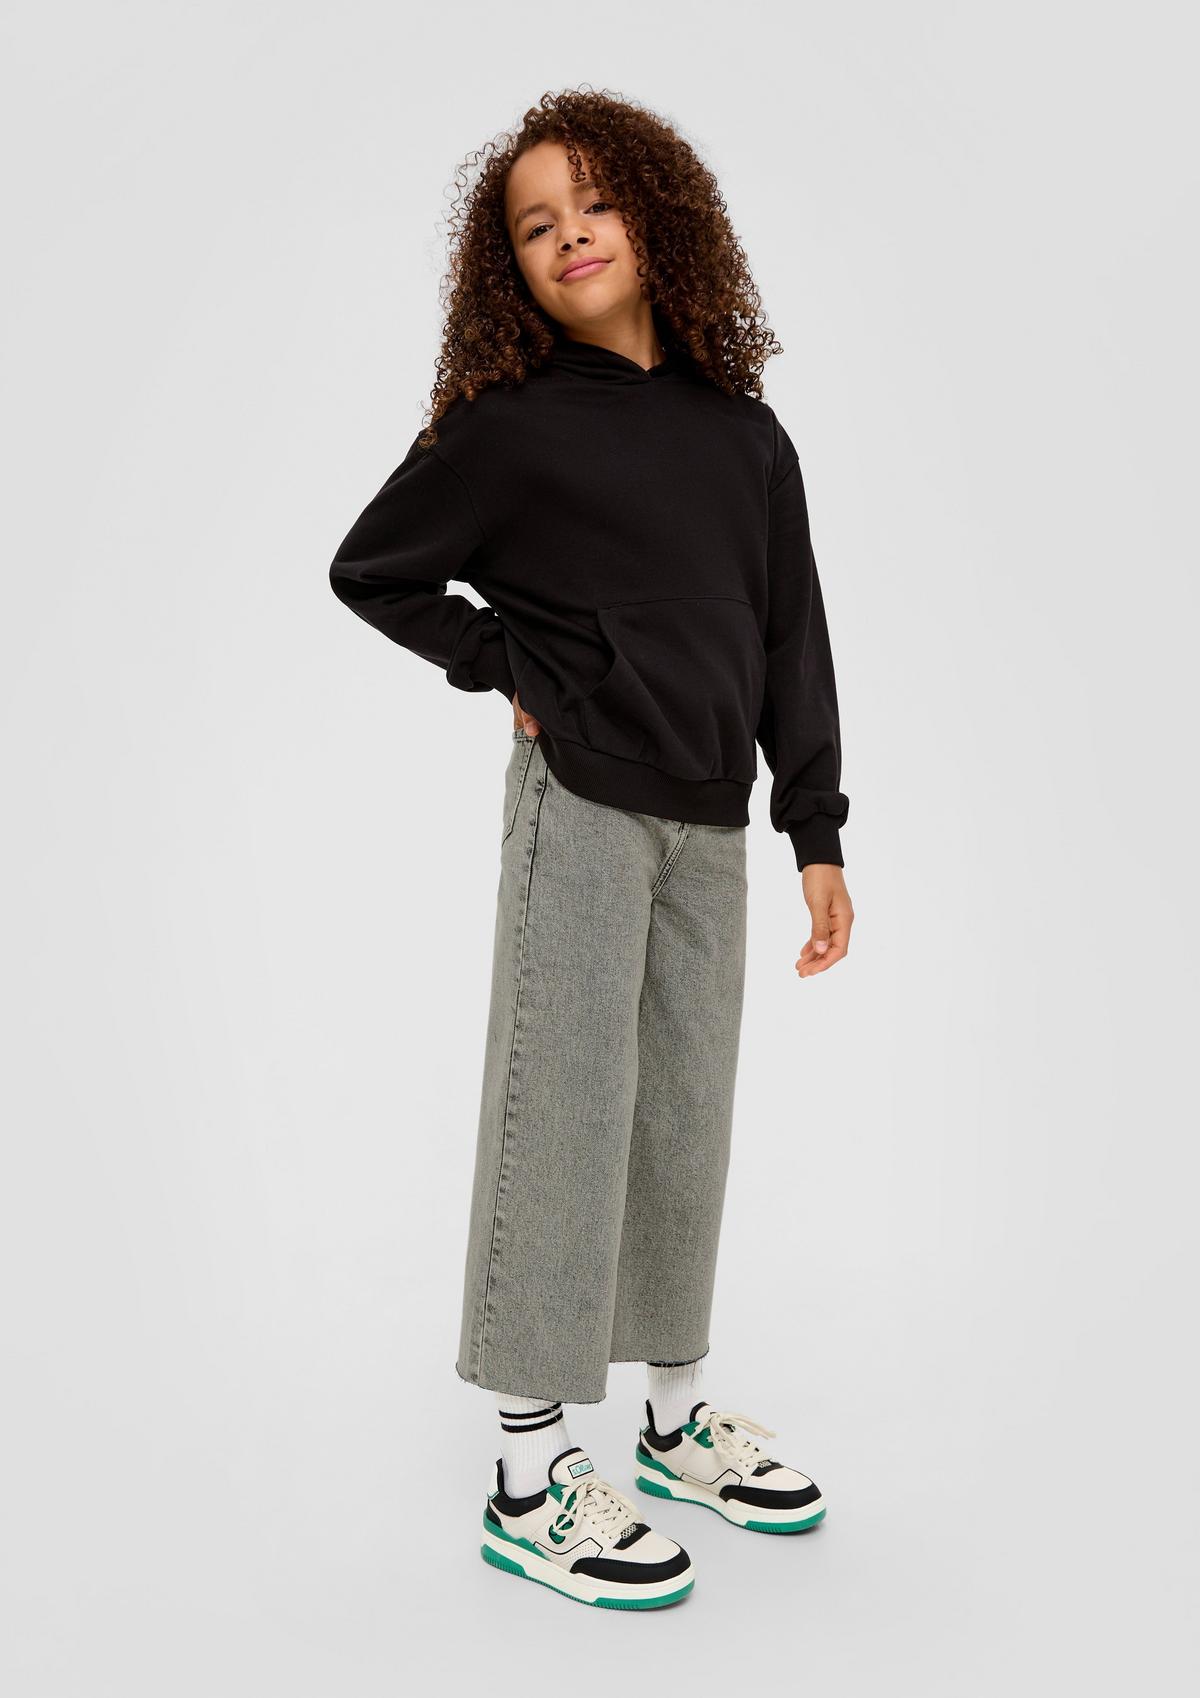 s.Oliver Regular : jupe-culotte au look denim